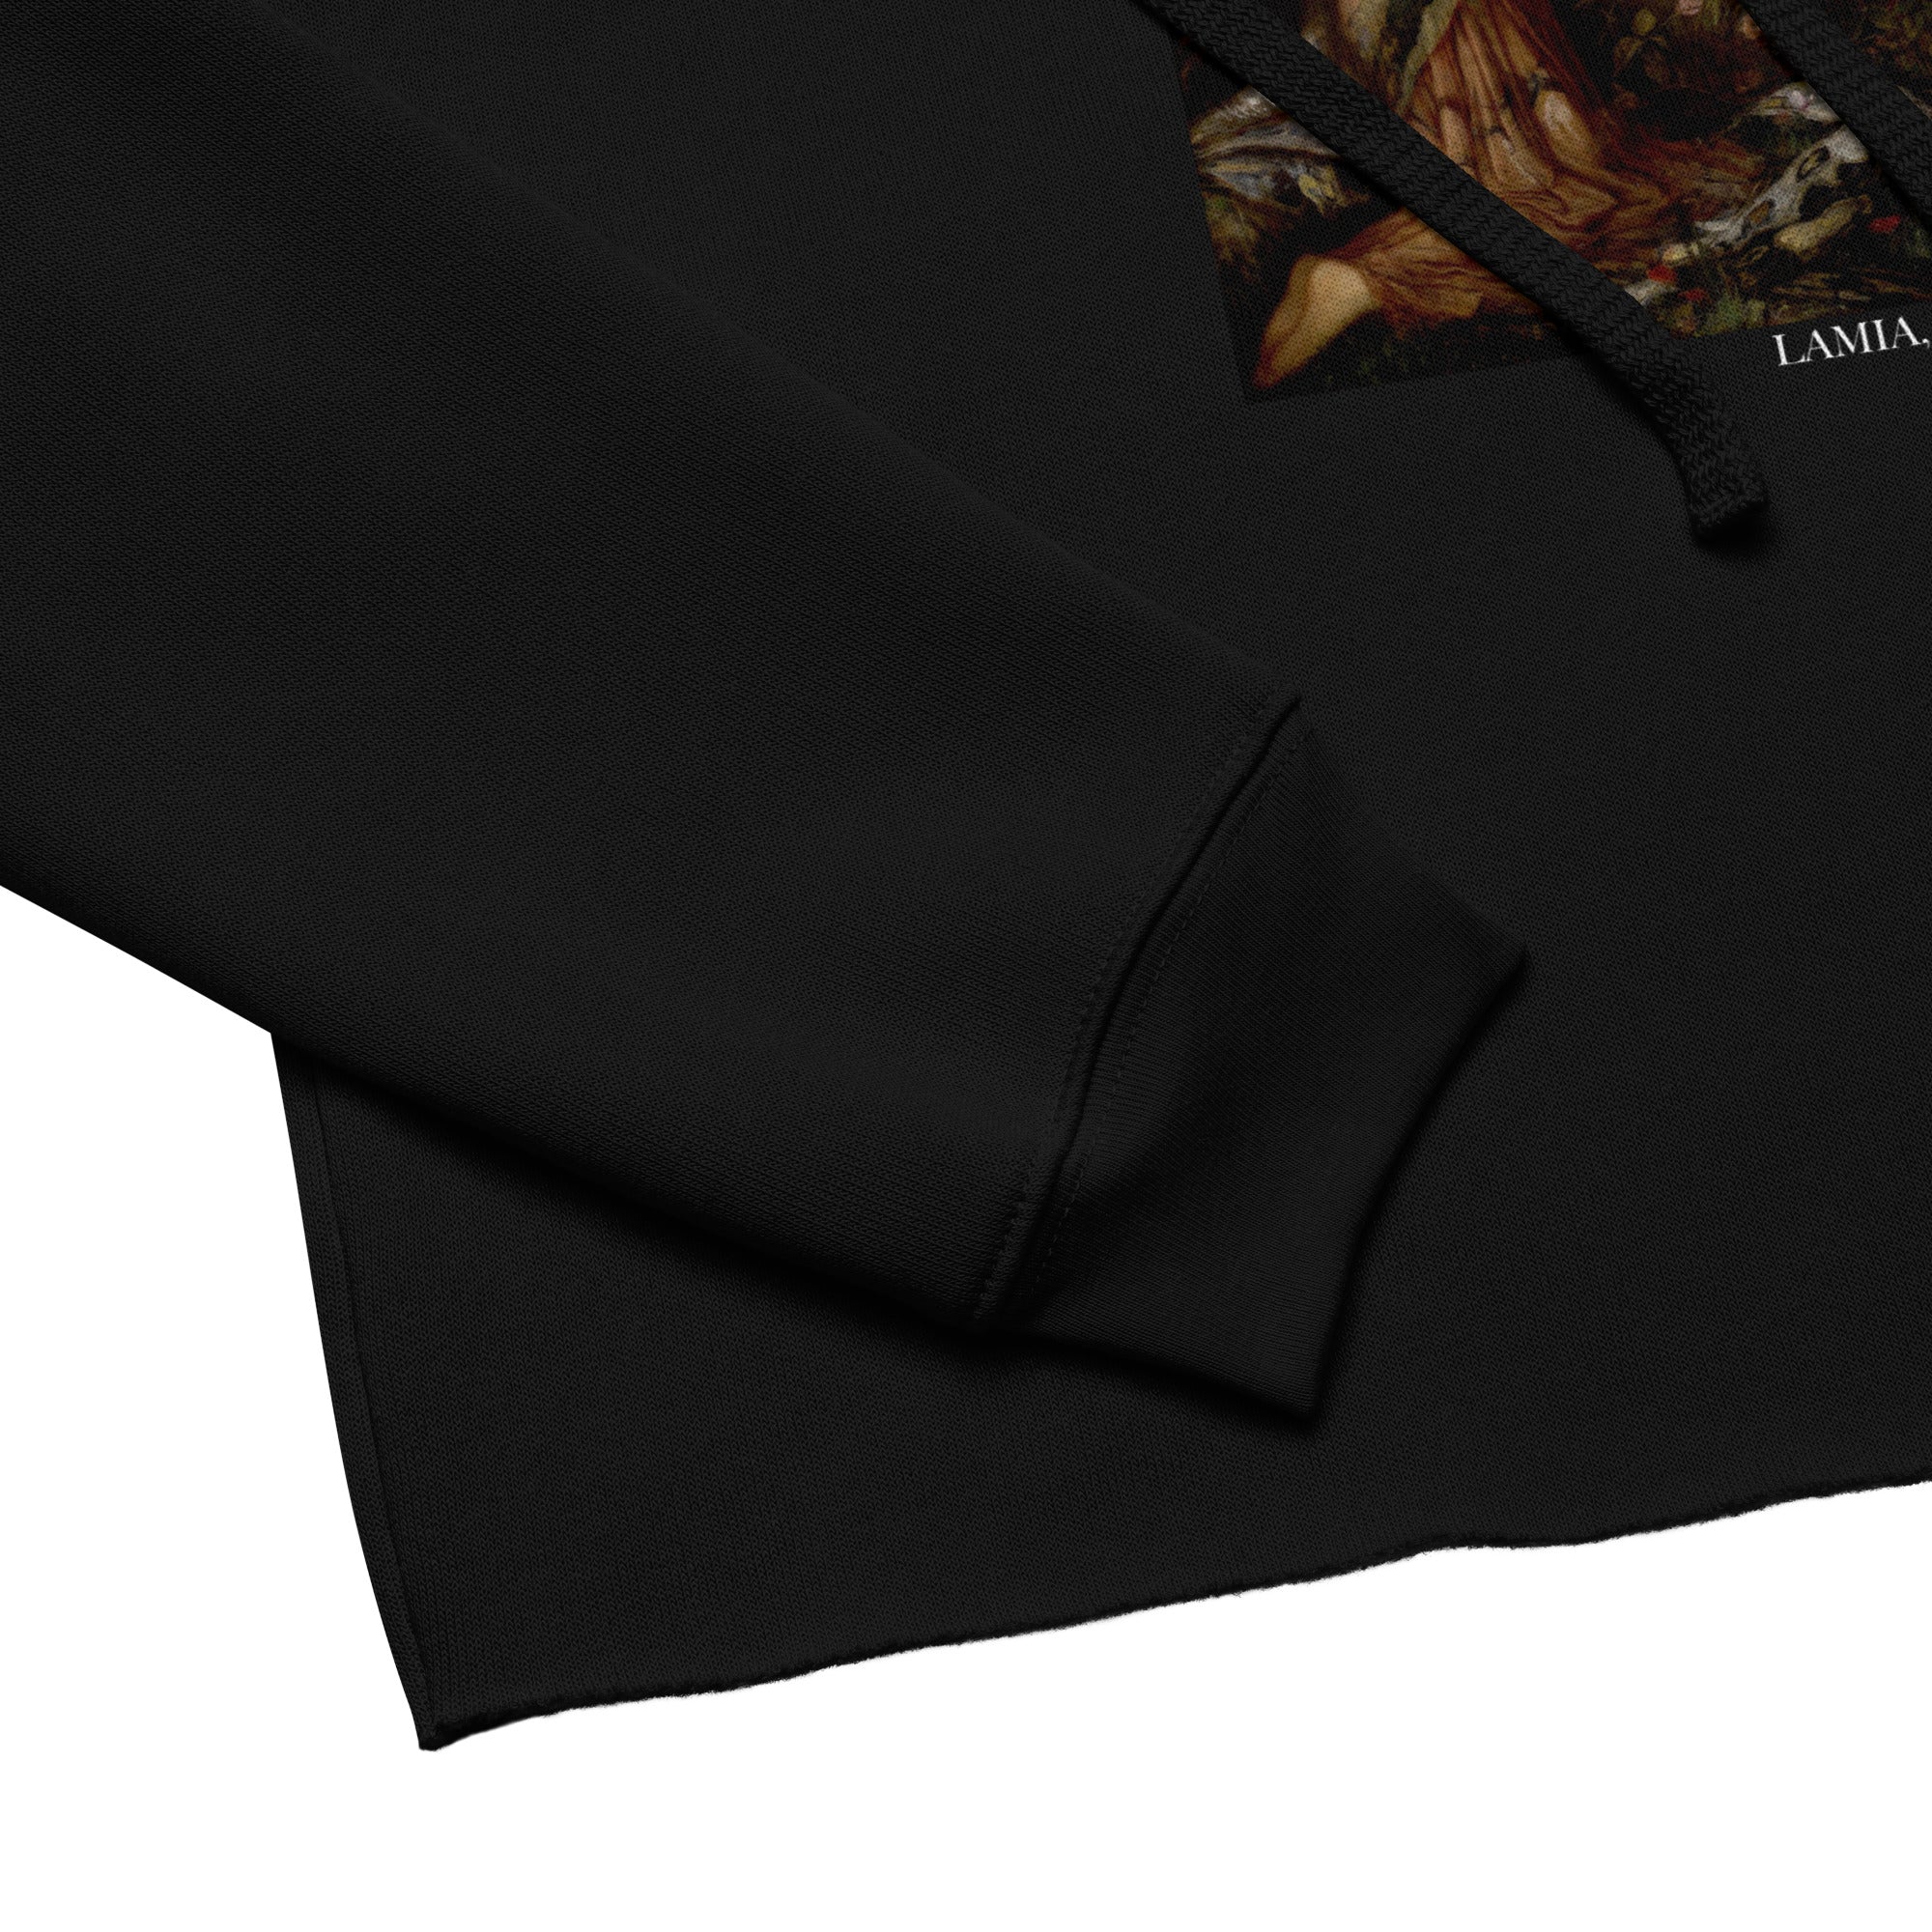 Kurzer Hoodie „Lamia“ von John William Waterhouse, berühmtes Gemälde | Kurzer Hoodie mit Premium-Kunstmotiv